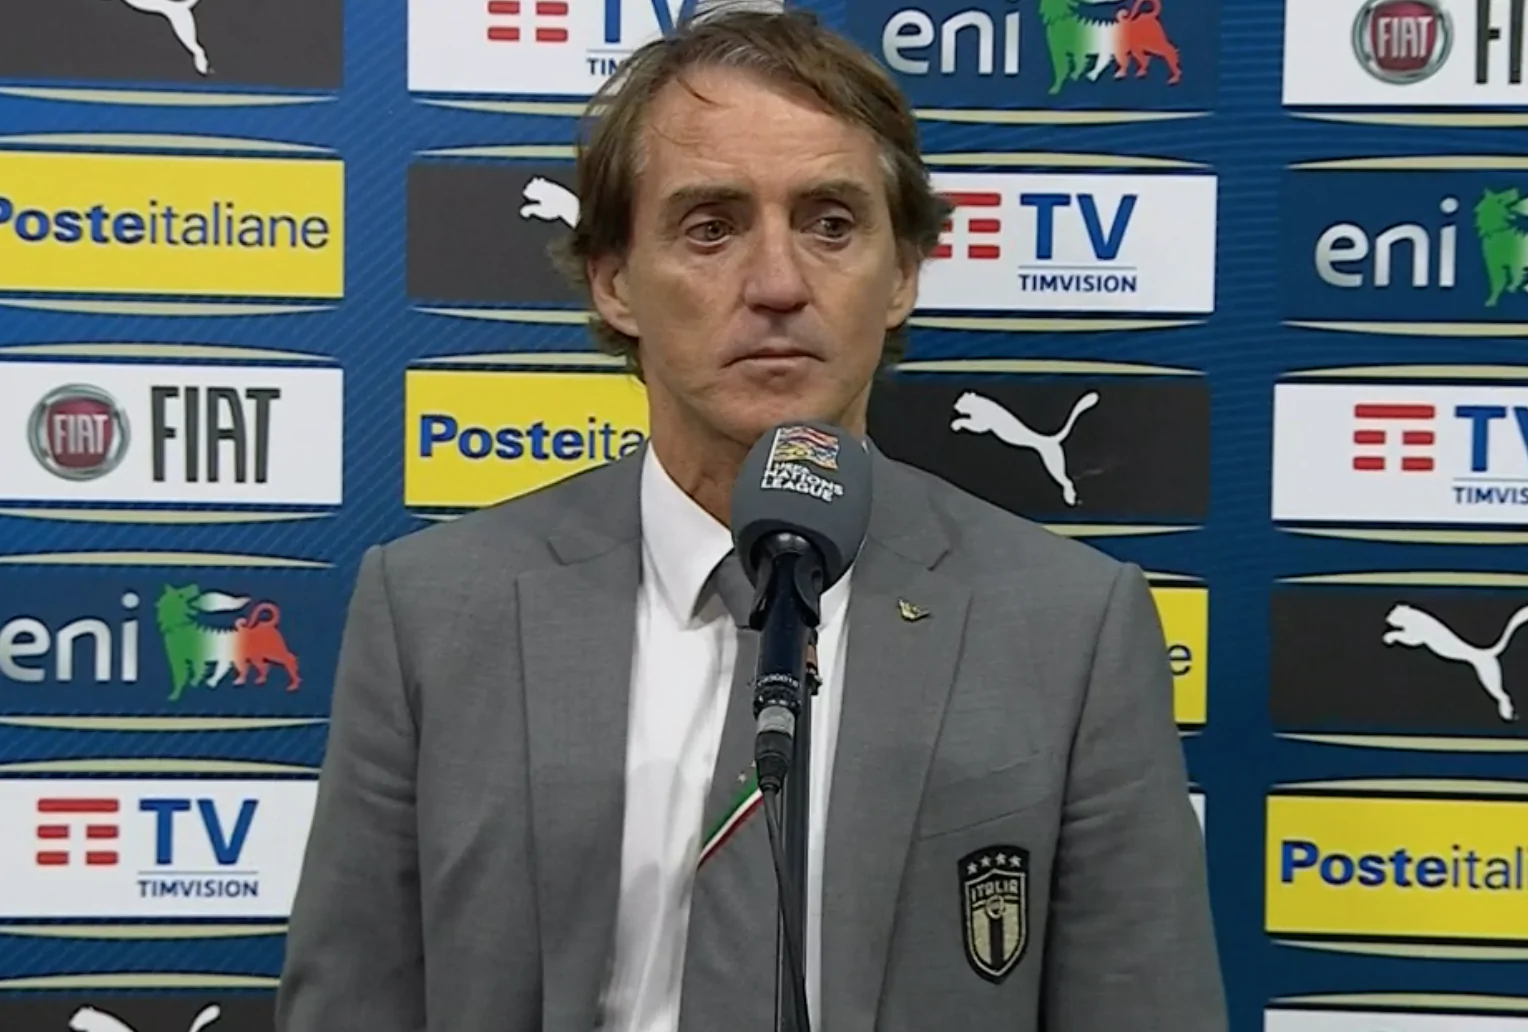 Mancini soddisfatto a metà: “Dobbiamo migliorare in un aspetto”. Poi il commento su Gatti